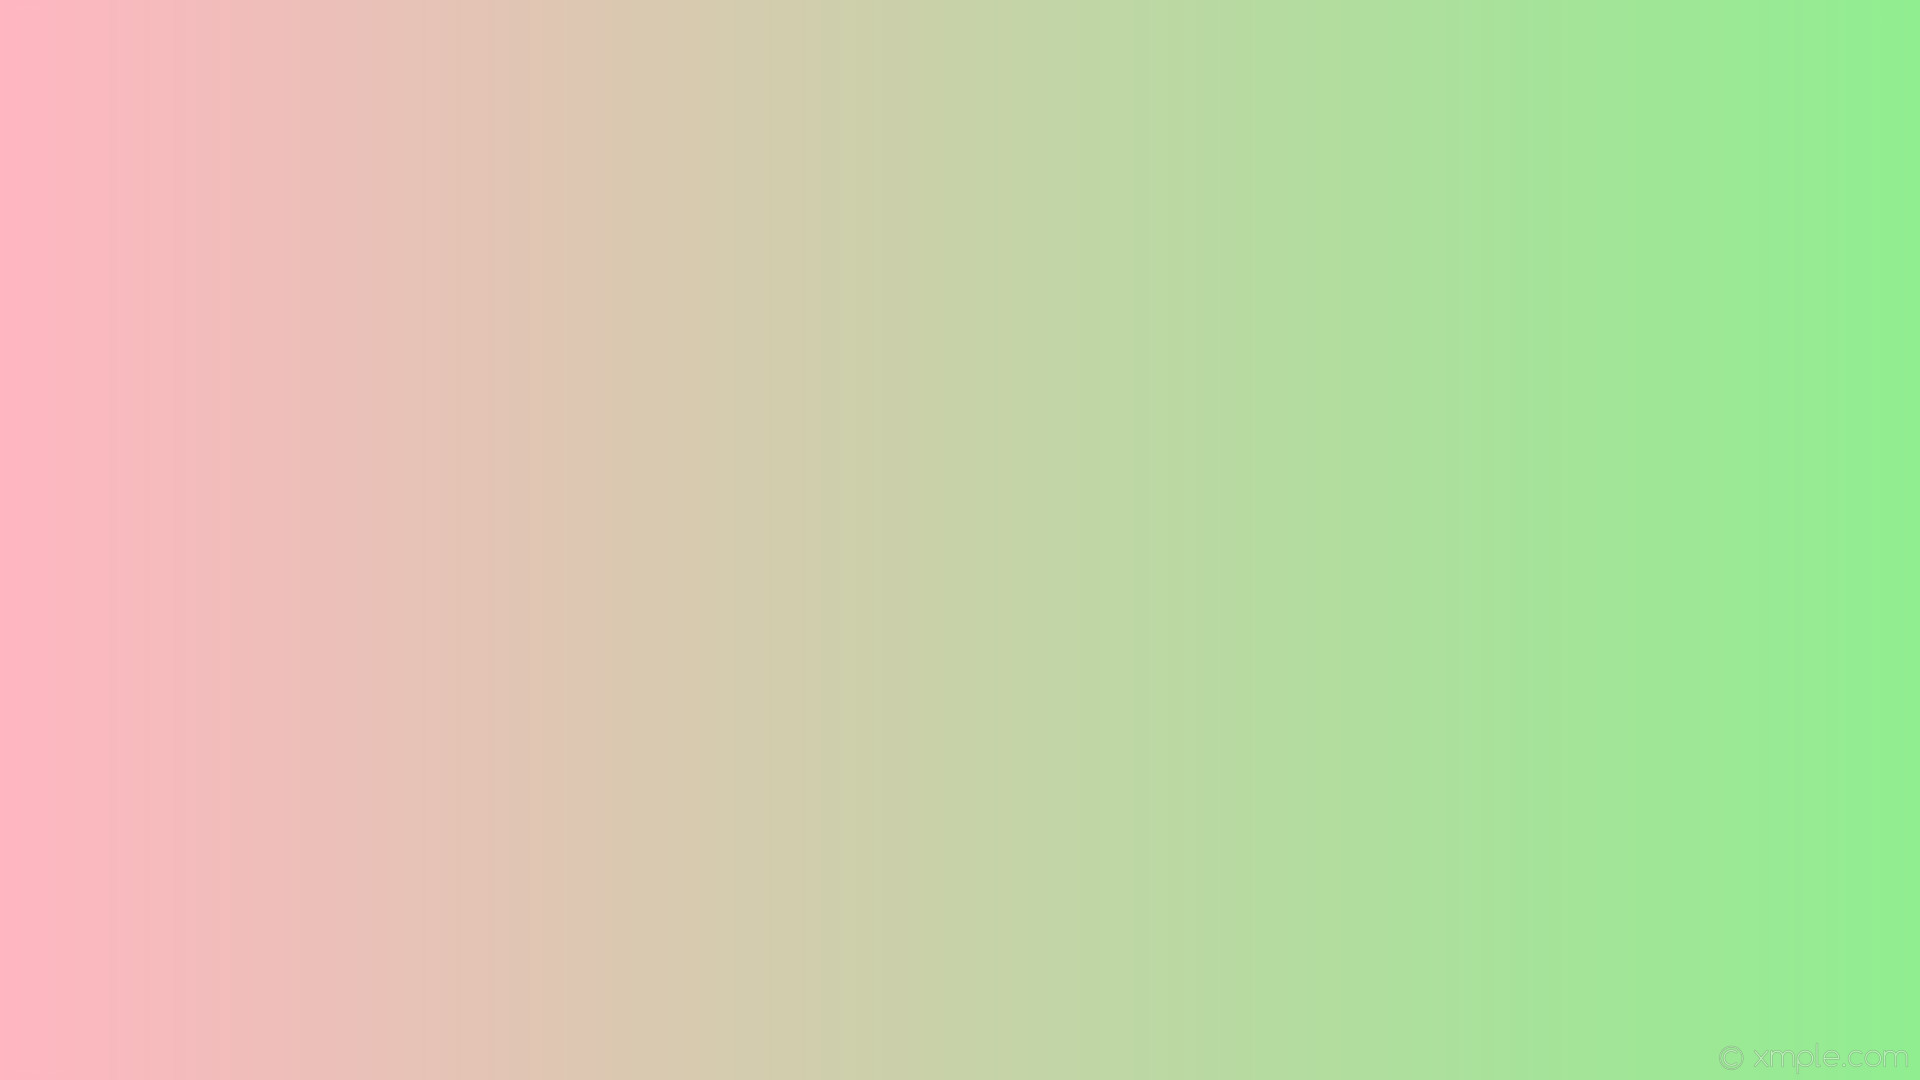 1920x1080 wallpaper linear pink green gradient light green light pink #90ee90 #ffb6c1  0Â°